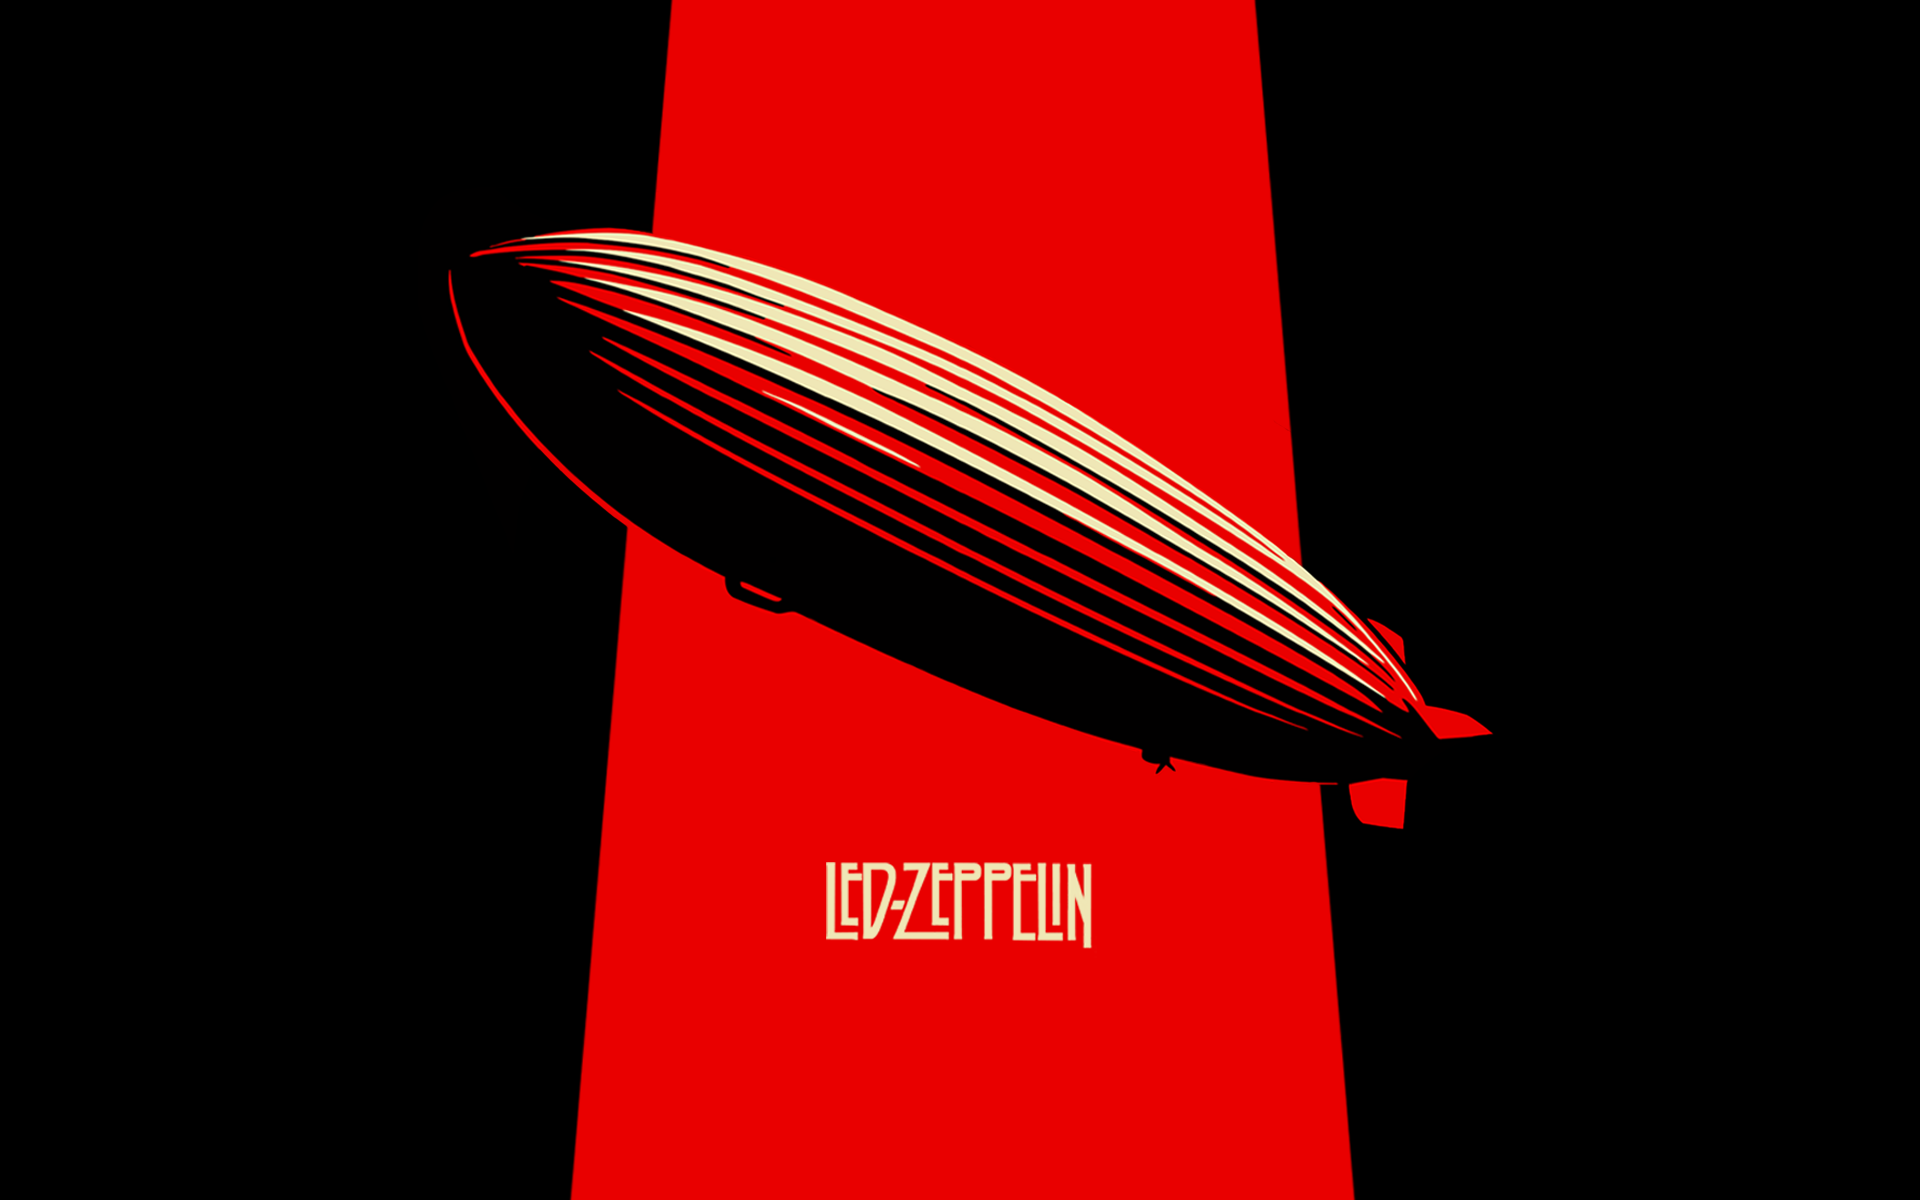 Tags Hard Rock Led Zeppelin Wallpaper